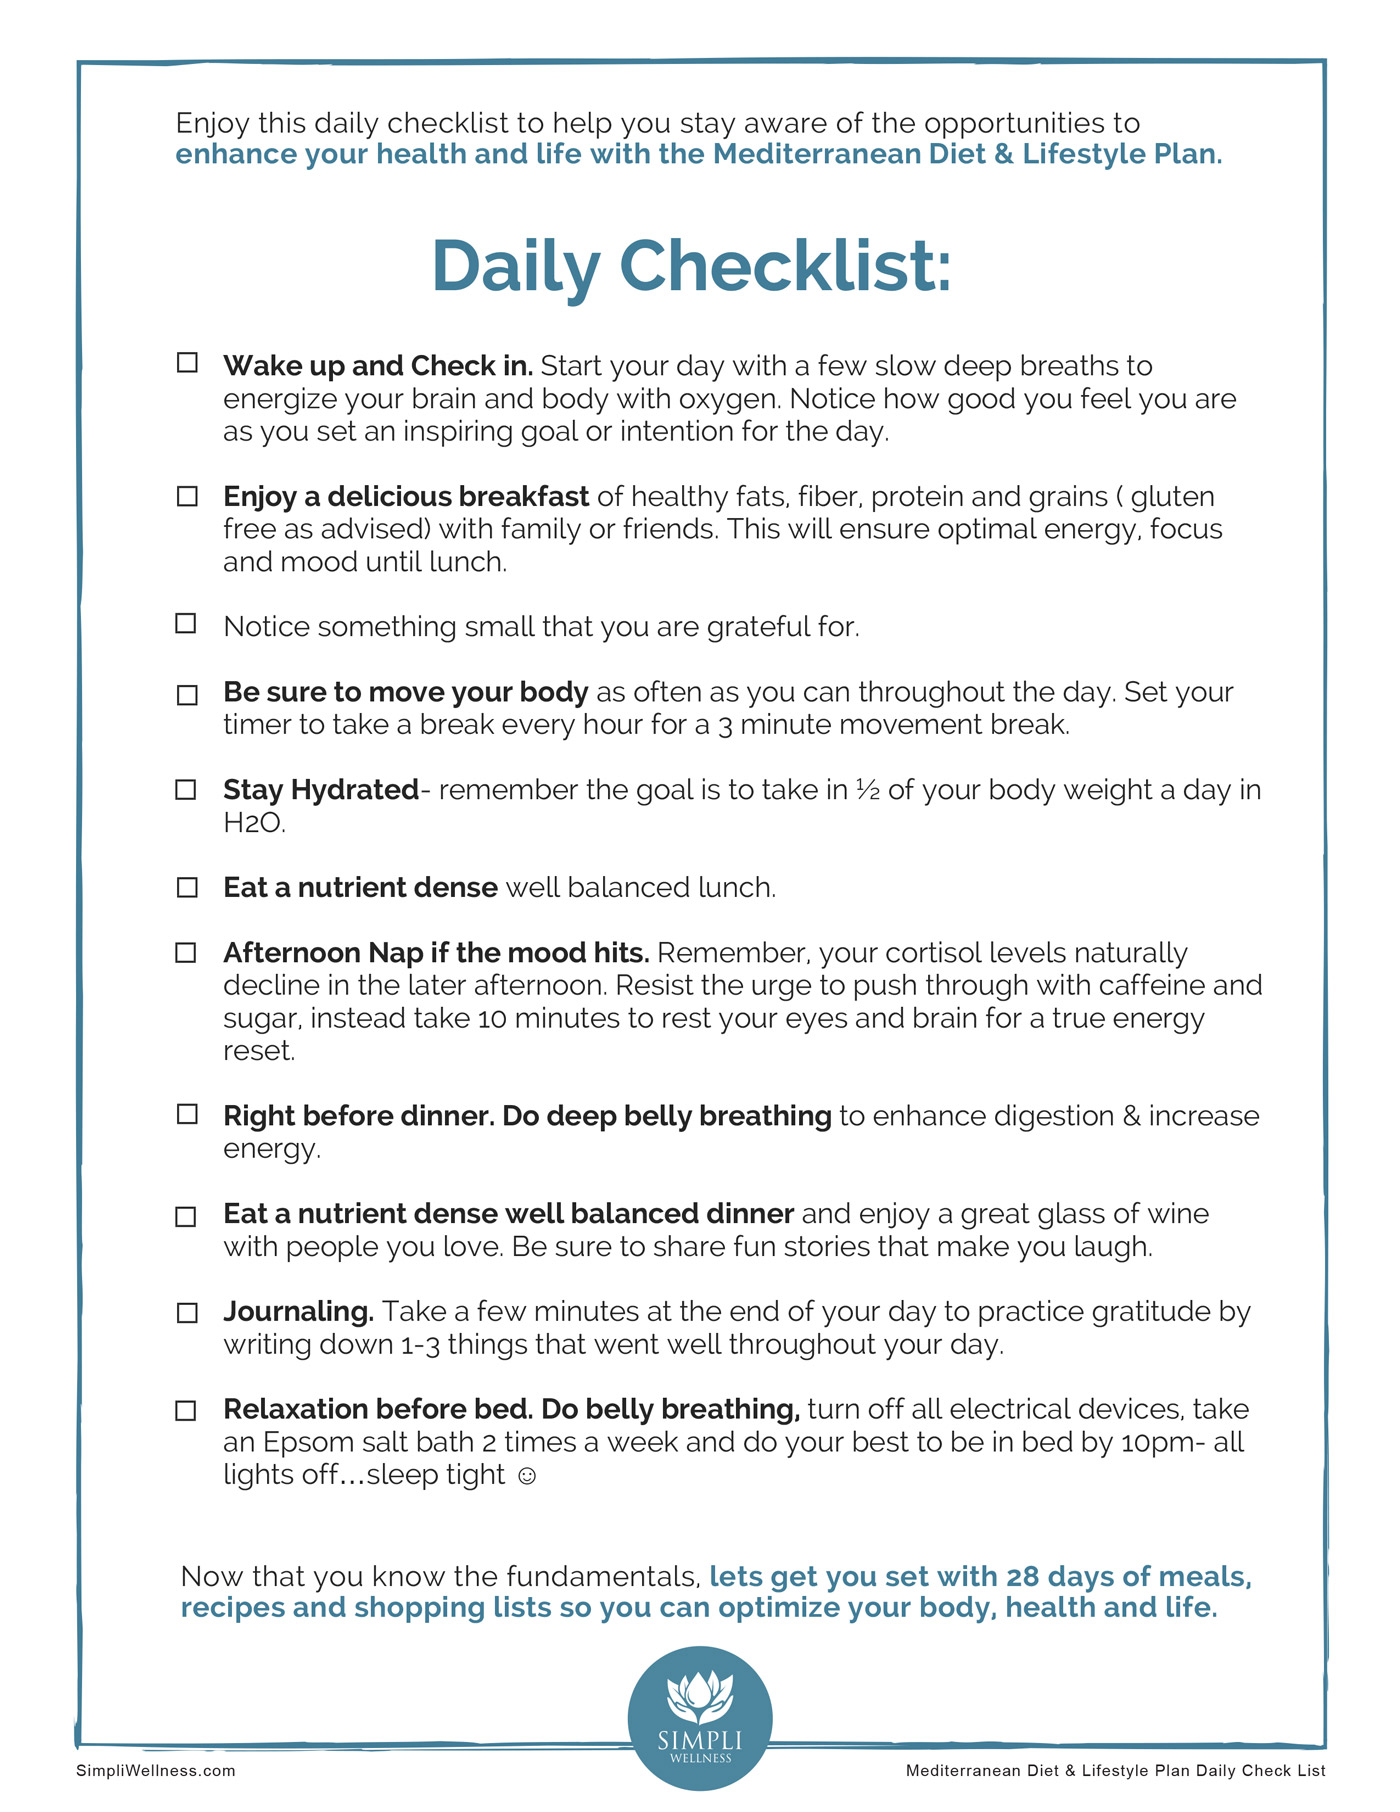 SW_Mediterranean_Lifestyle_Daily_Checklist